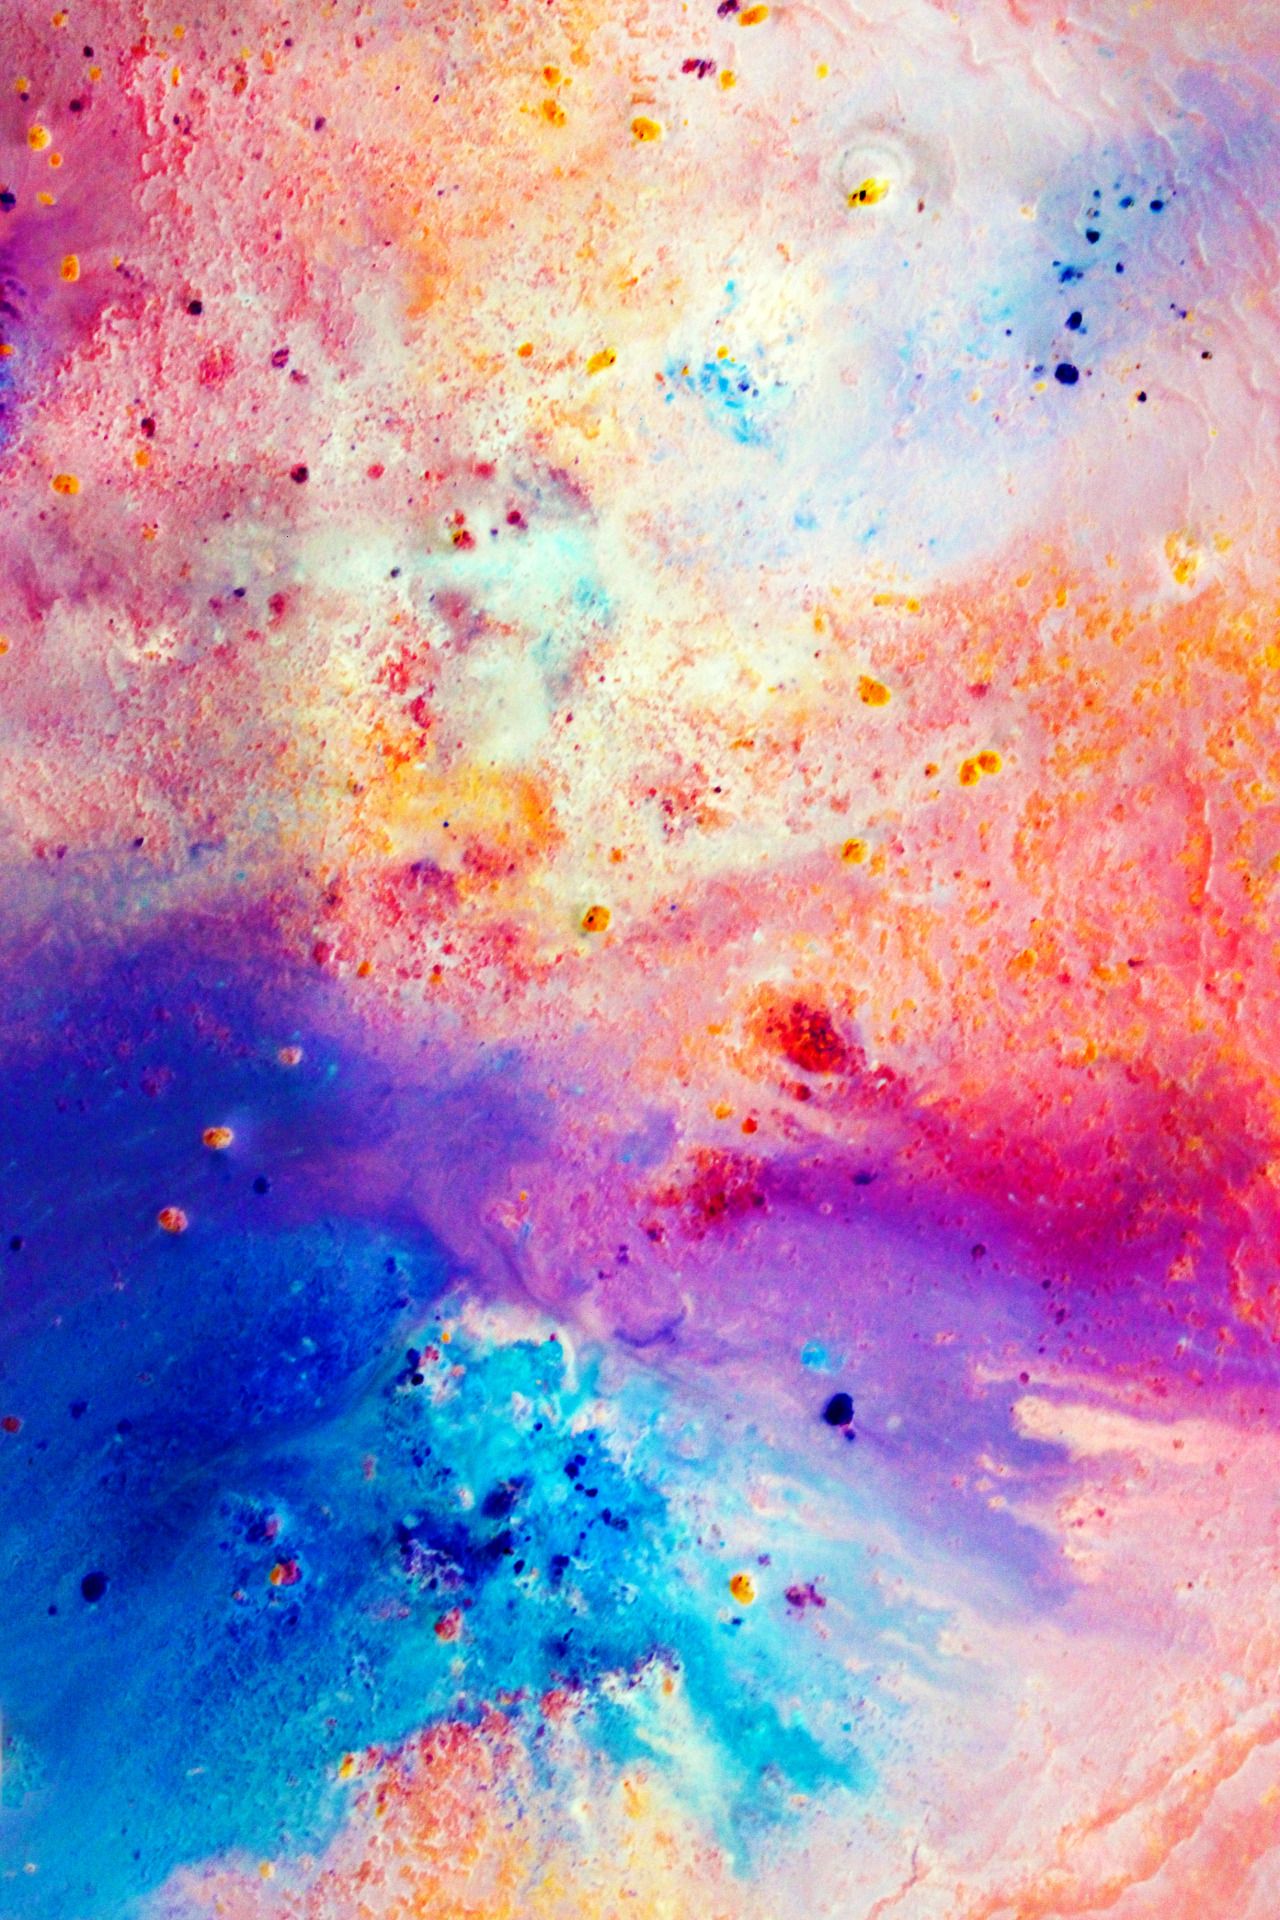 simpatici sfondi colorati,pittura ad acquerello,blu,cielo,arancia,atmosfera